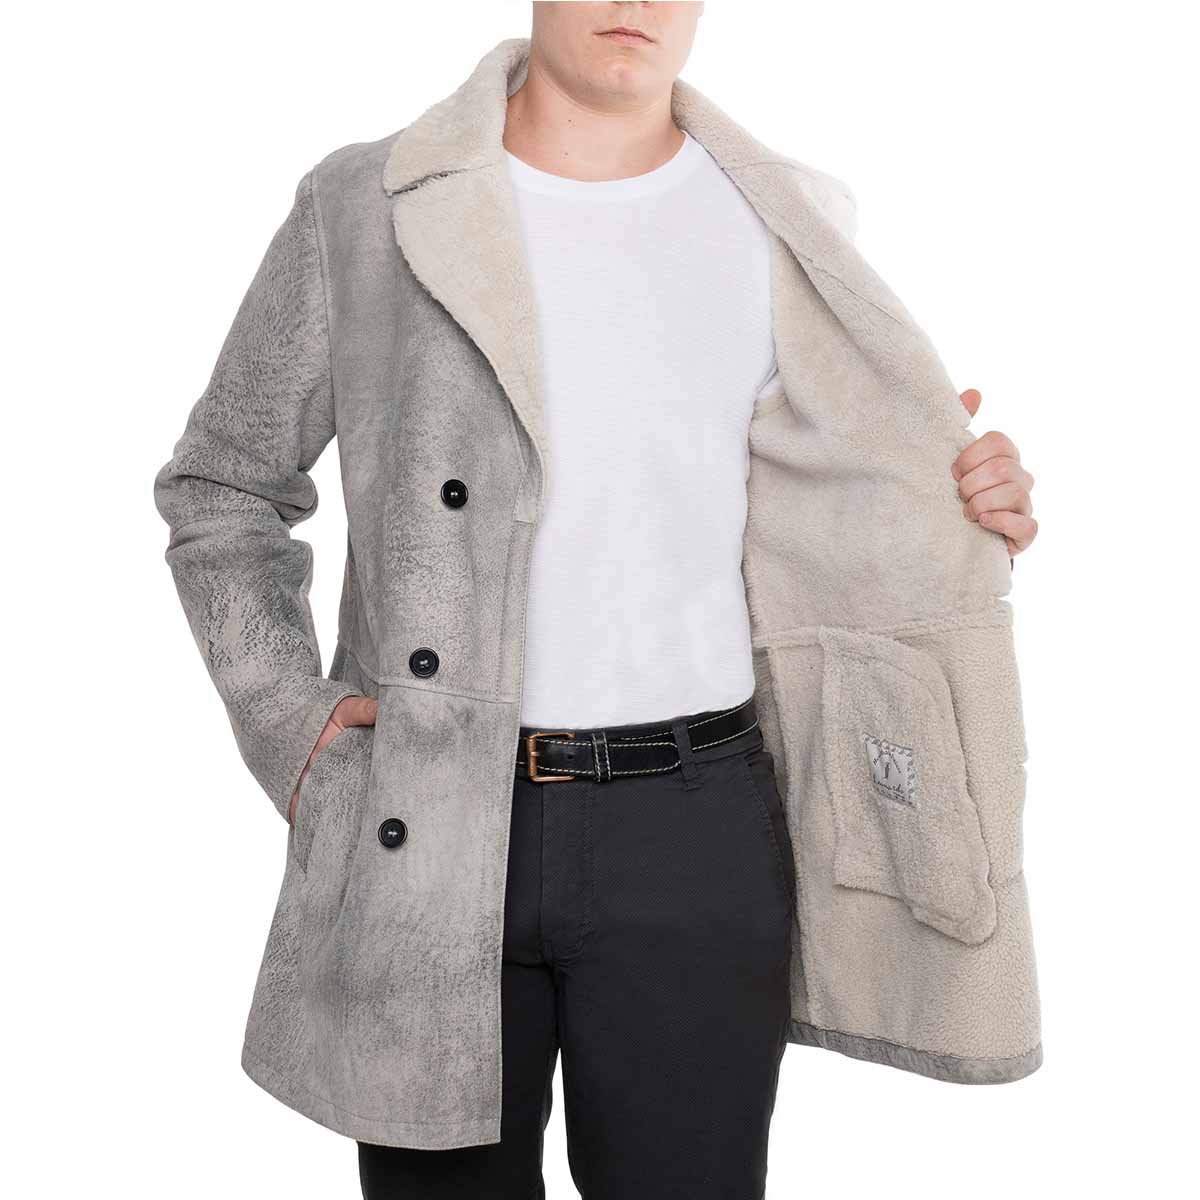 Double breasted men's jacket in gray sheepskin